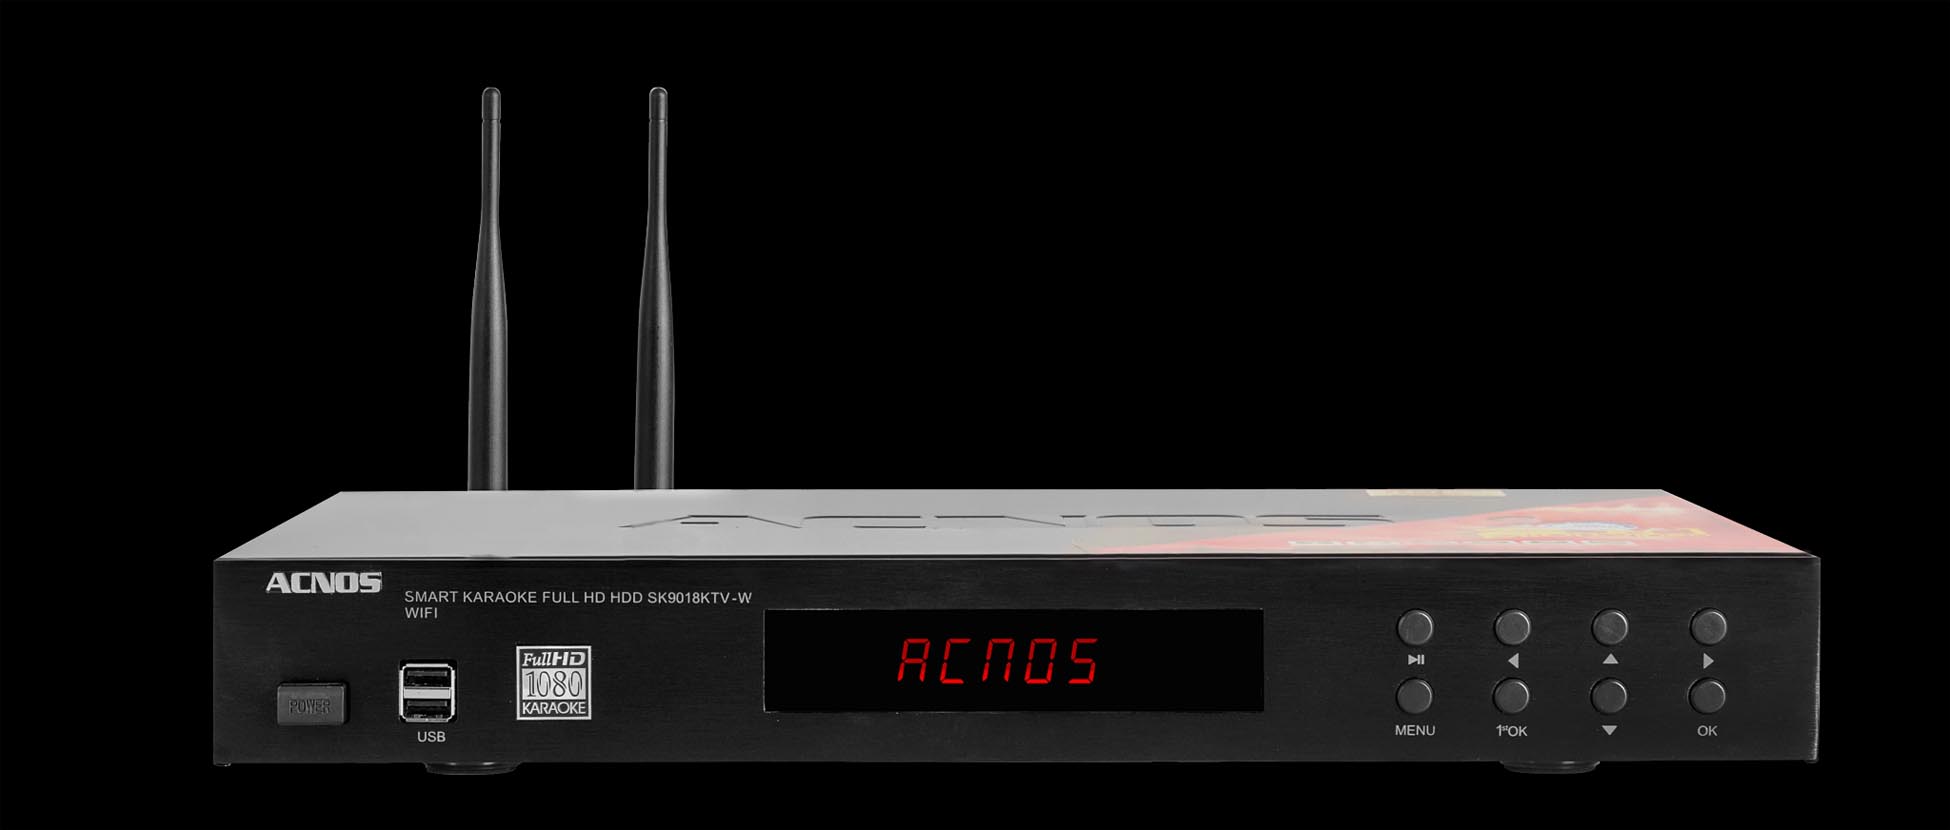 Đầu Karaoke Acnos SK9018KTV-W + Ổ cứng 4T đã chép nhạc